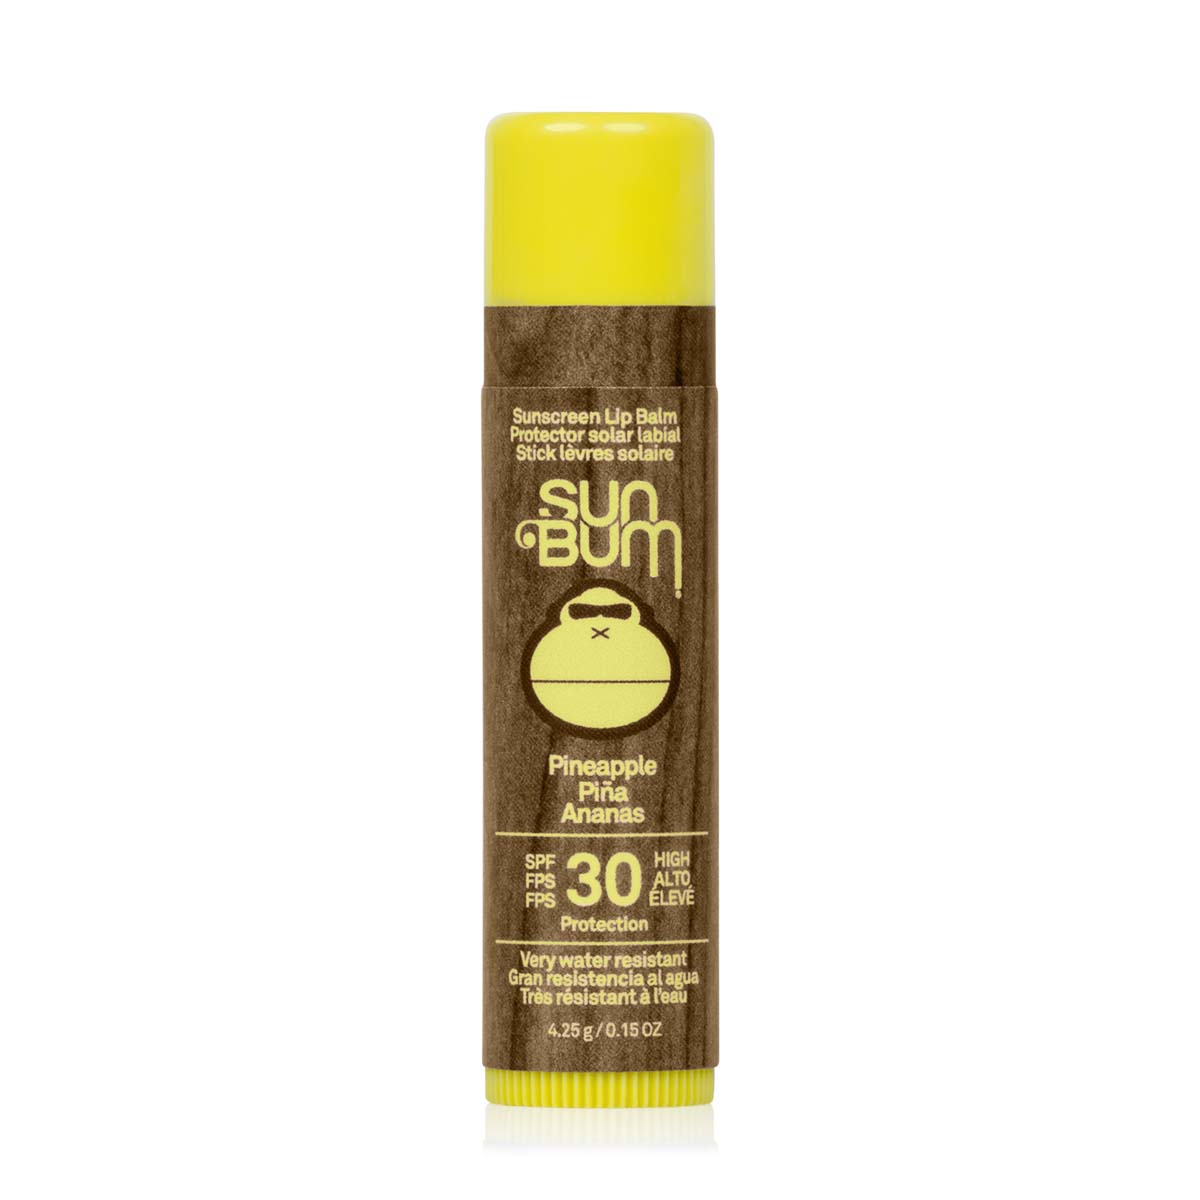 Sun Bum Original Spf30 Sunscreen Lip Balm - Pineapple 4.25G